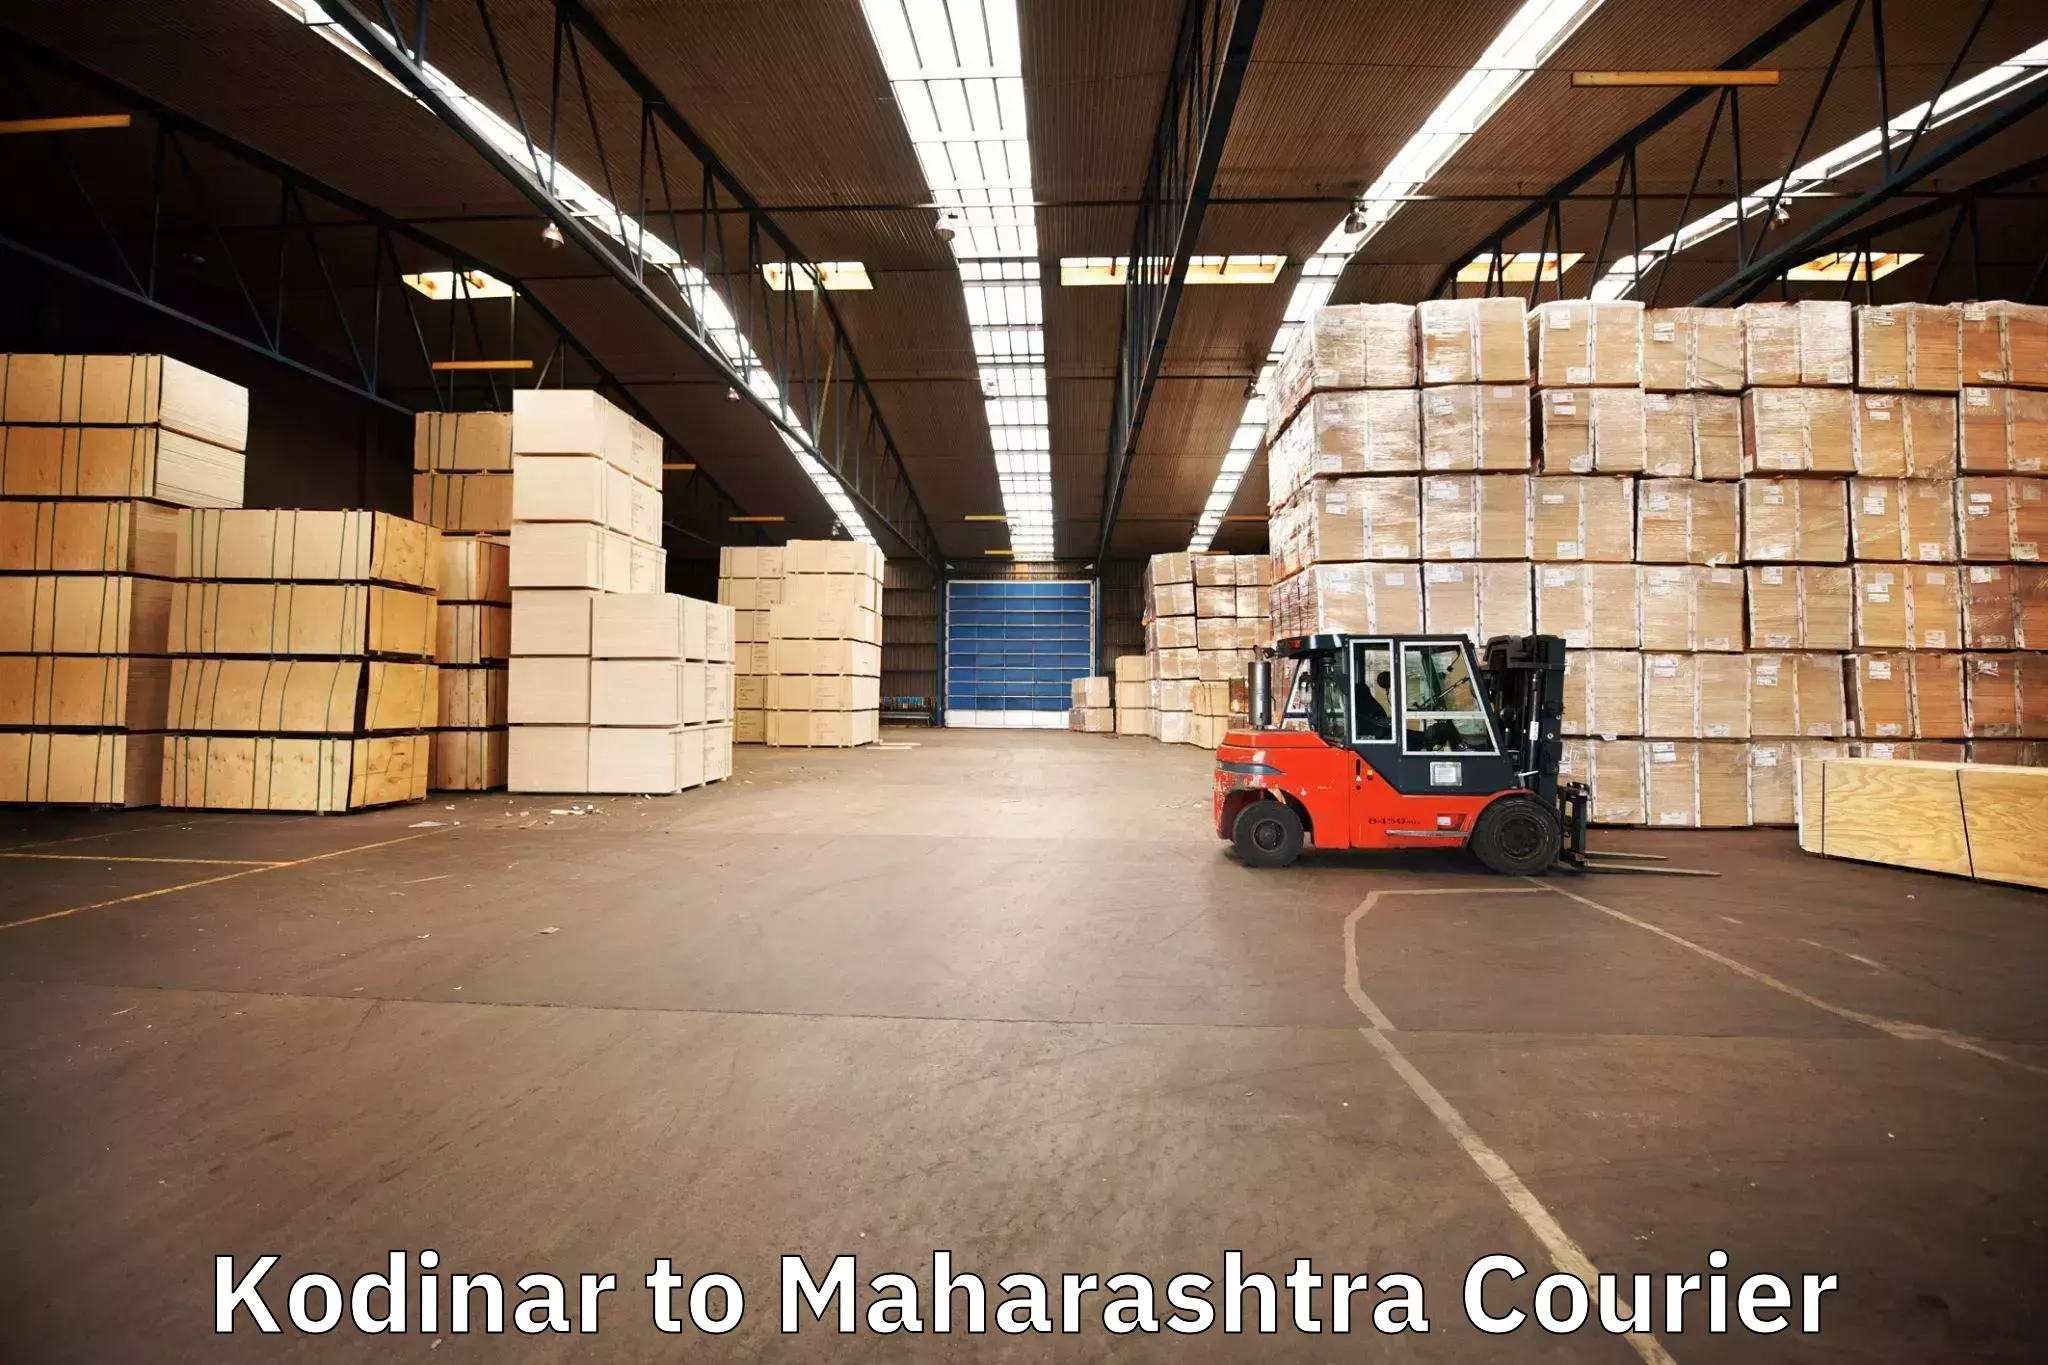 Trusted moving company Kodinar to Maharashtra